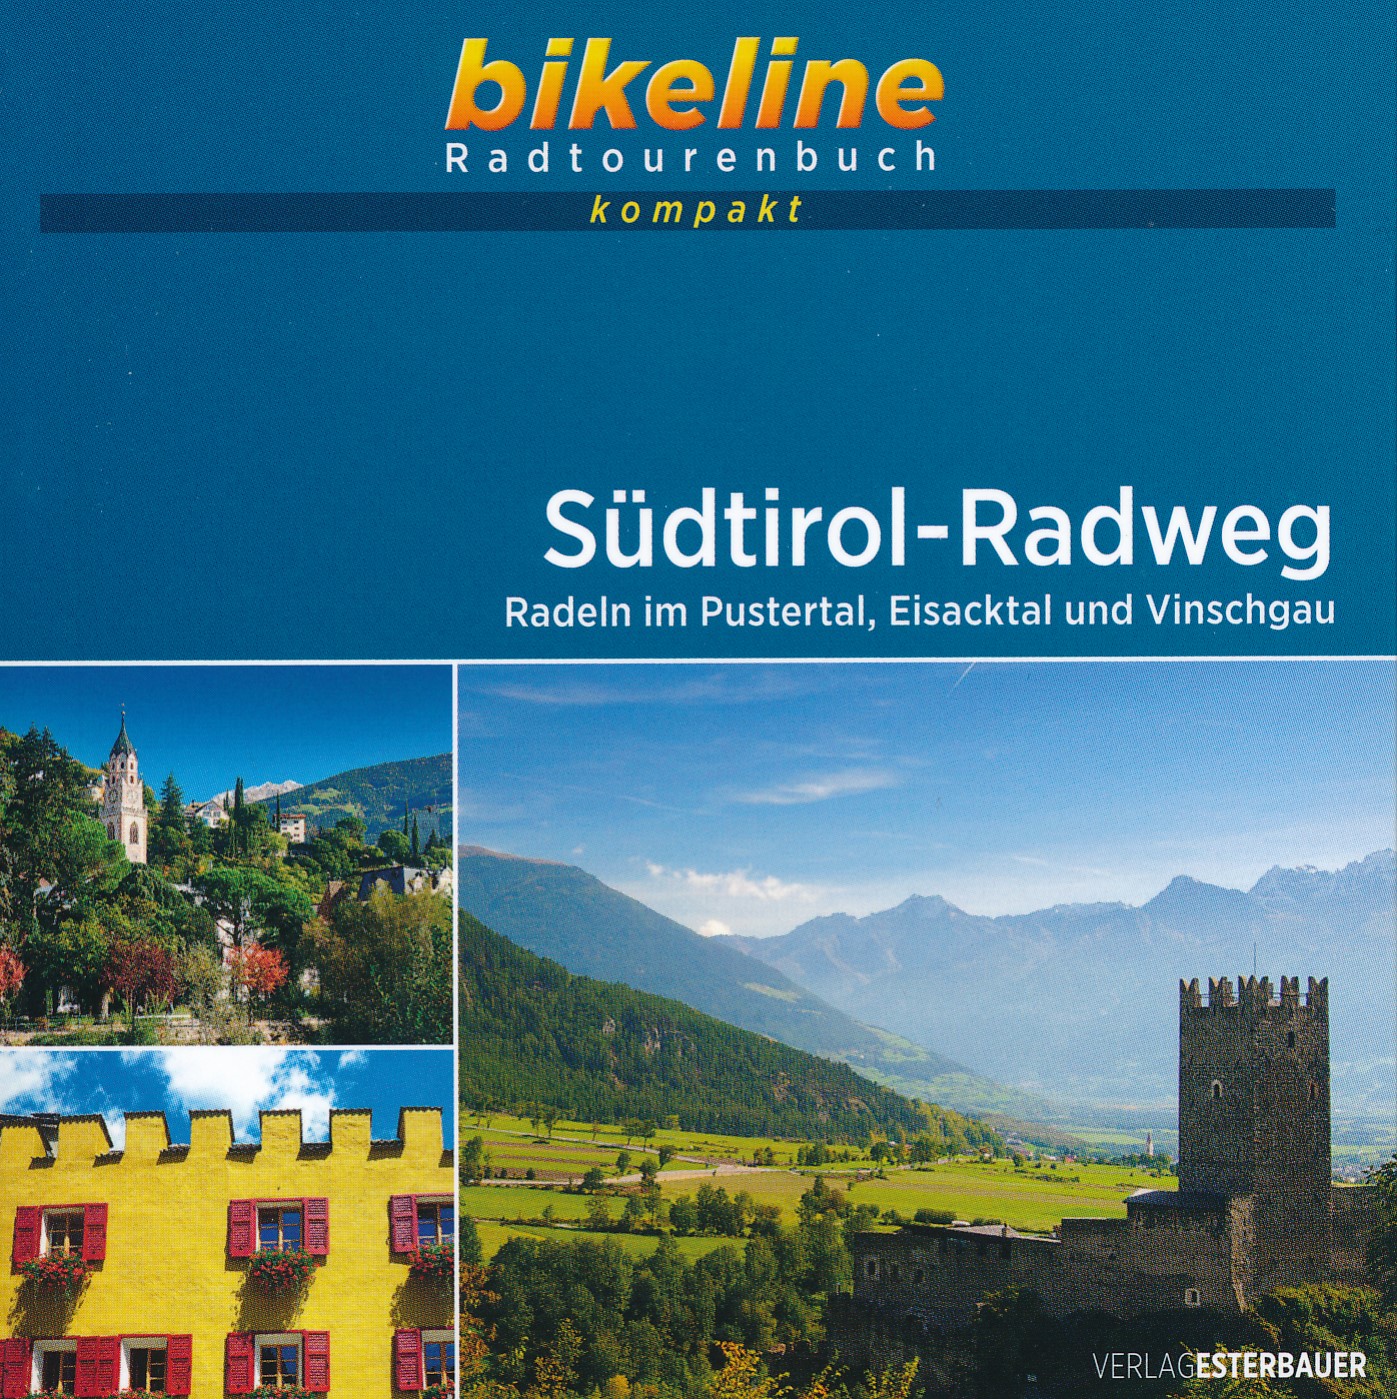 Online bestellen: Fietsgids Bikeline Radtourenbuch kompakt Südtirol - Radweg | Esterbauer